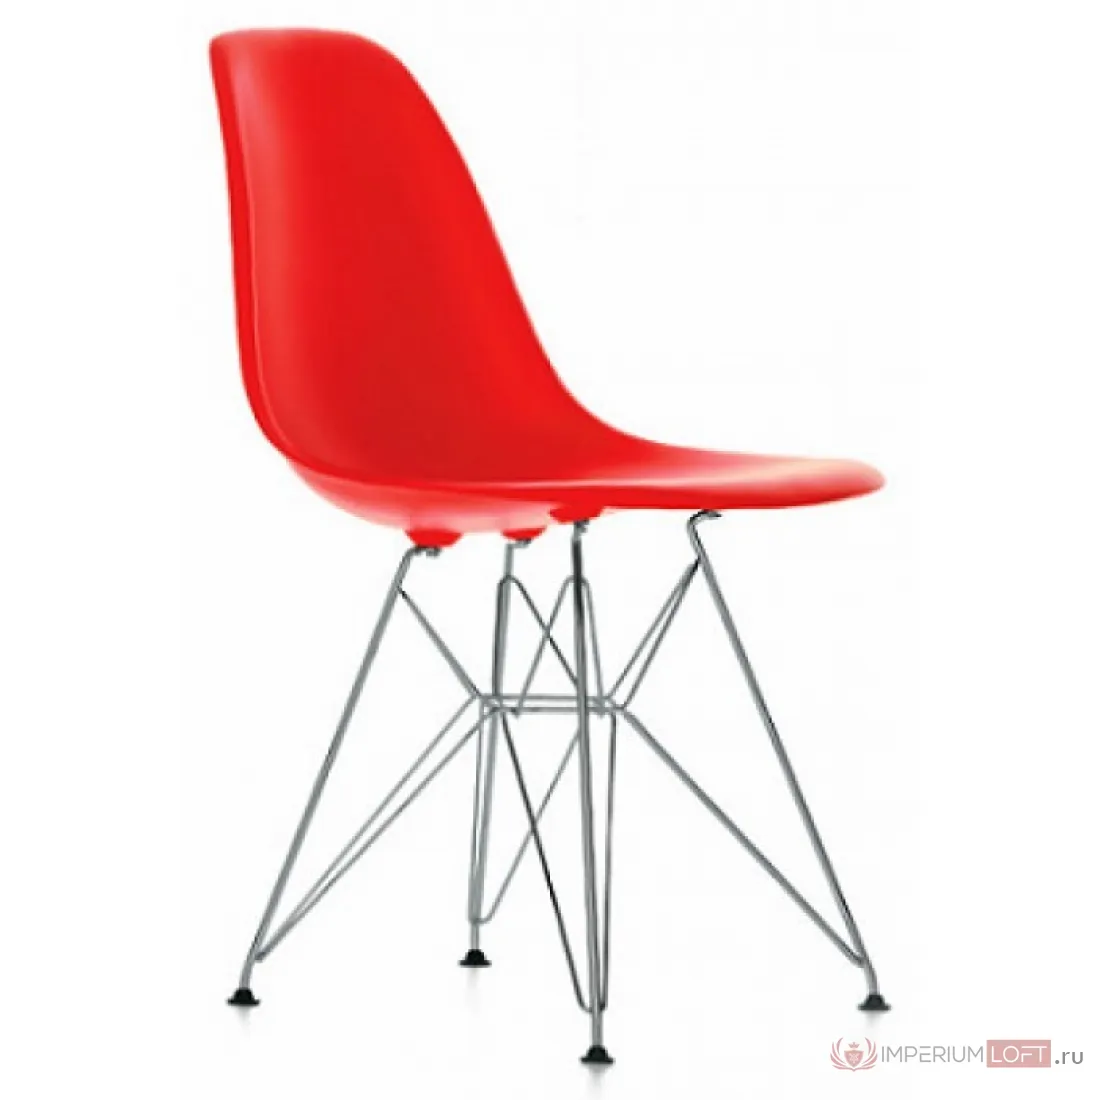 Eames Plastic Chair (Vitra)